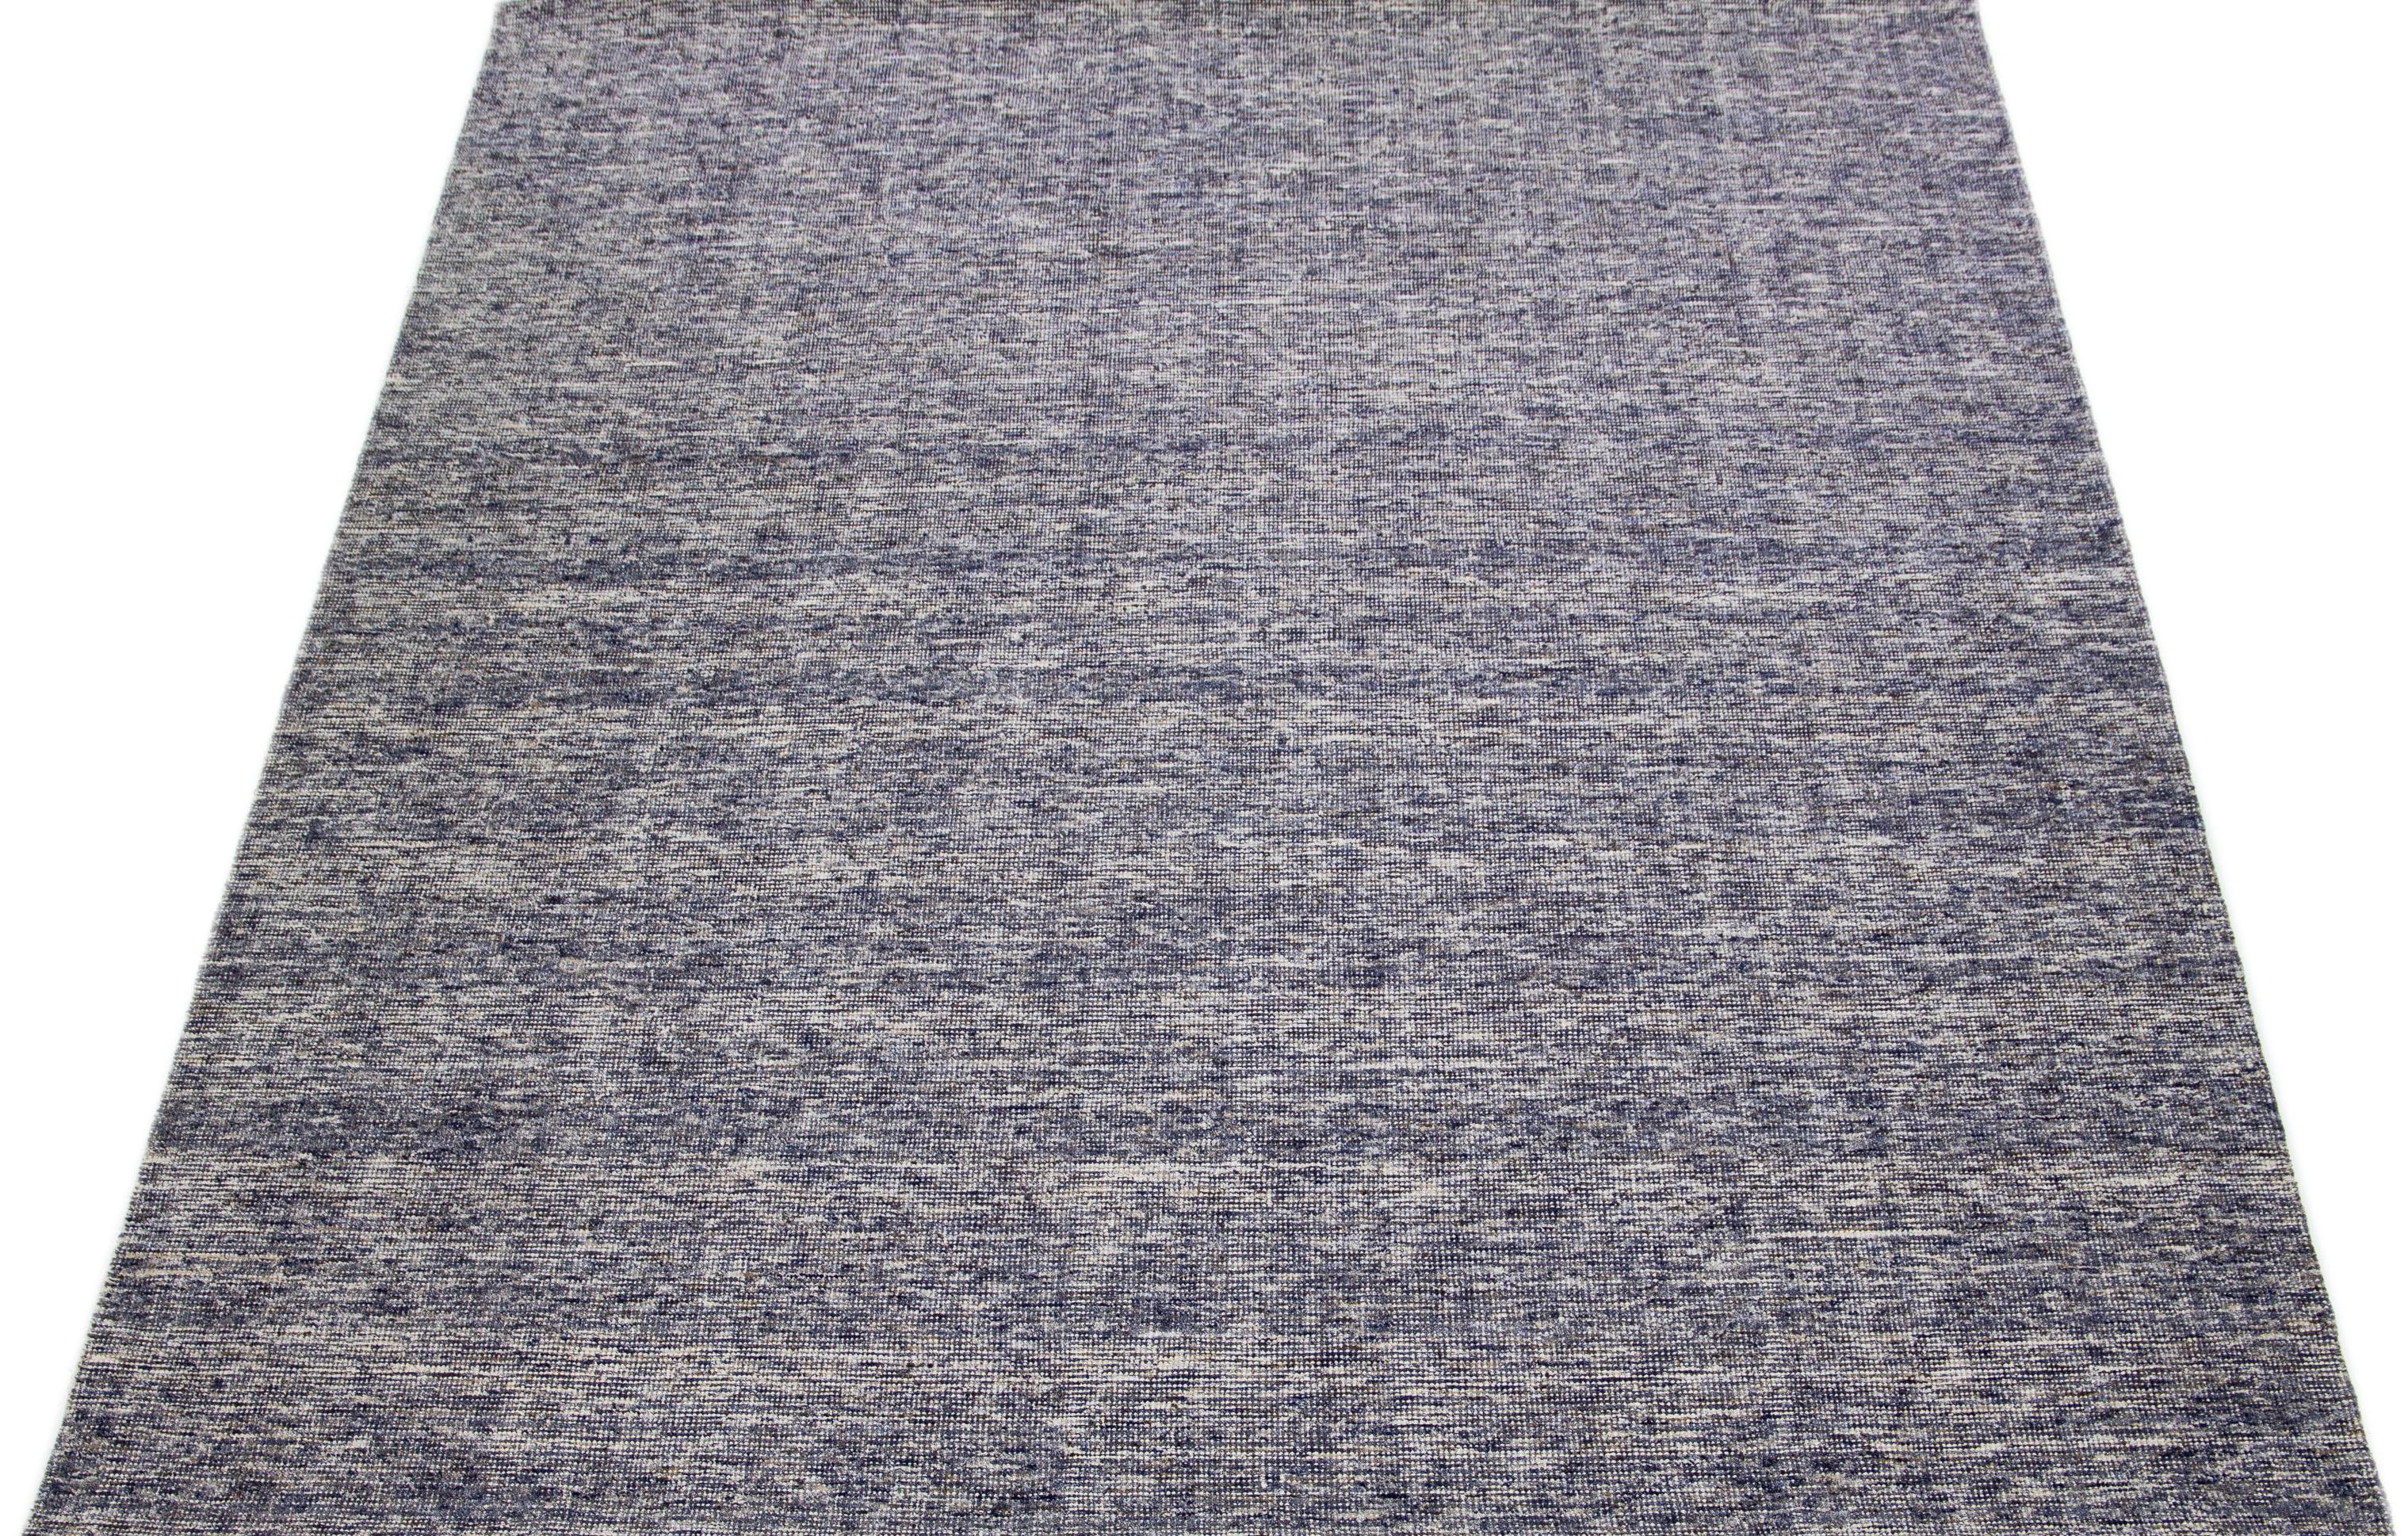 Wunderschöner handgefertigter indischer Rillenteppich aus Bambus, Seide und Wolle von Apadana mit einem blauen Feld. Dieser Teppich aus der Groove Collection hat ein Allover-Muster.

Dieser Teppich misst 9'3